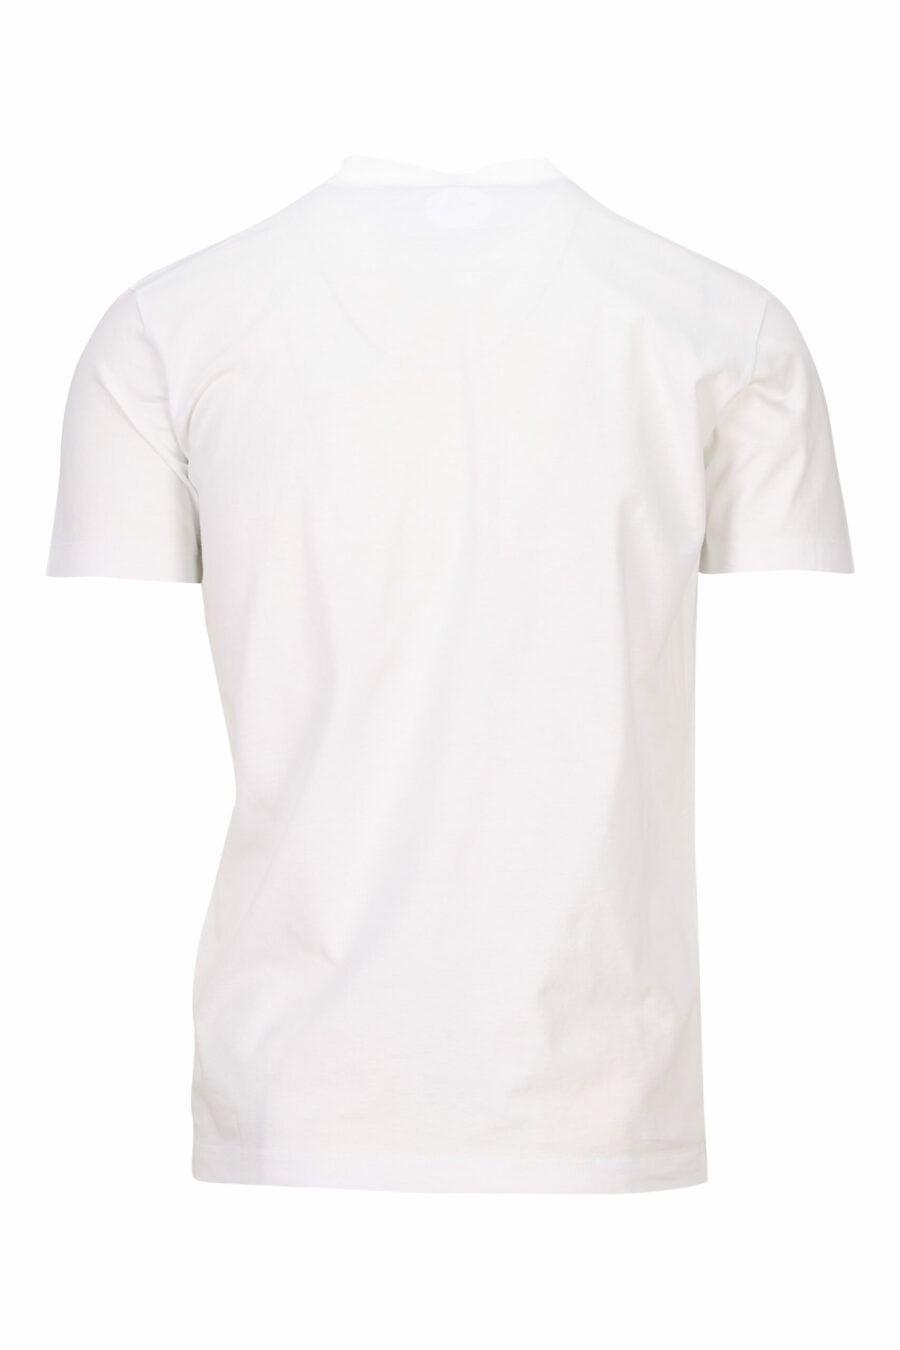 T-shirt blanc avec maxilogo de chien de basket - 8054148332594 1 scaled